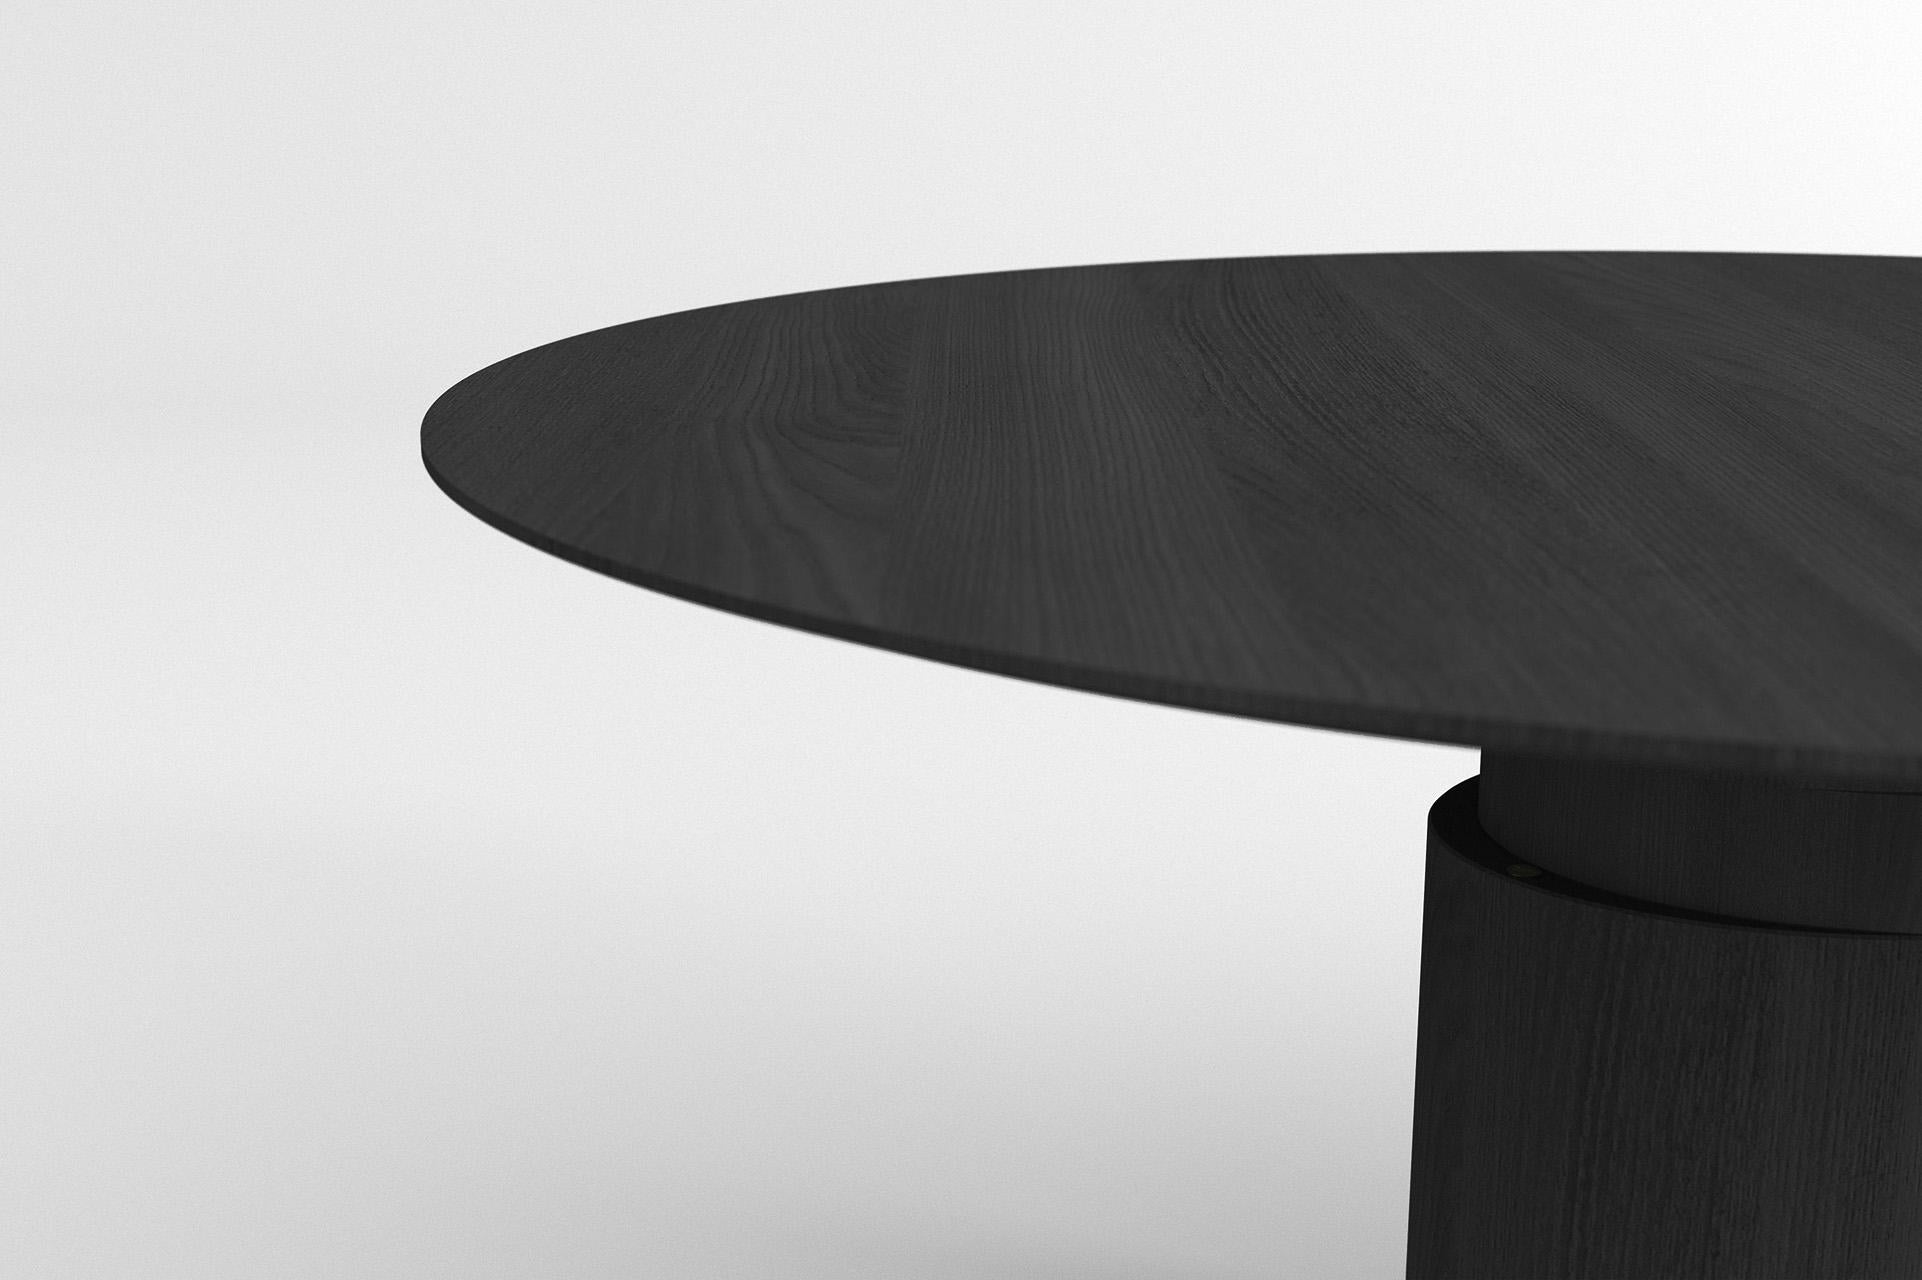 Ein raffiniertes und augenfreundliches Design. Der Scheibentisch ist ein scheinbar runder Tisch, dessen Tischplatte von einer zentralen Säule getragen wird, die überraschenderweise von einer dezentralen Scheibe unterbrochen wird. Unsere Tische